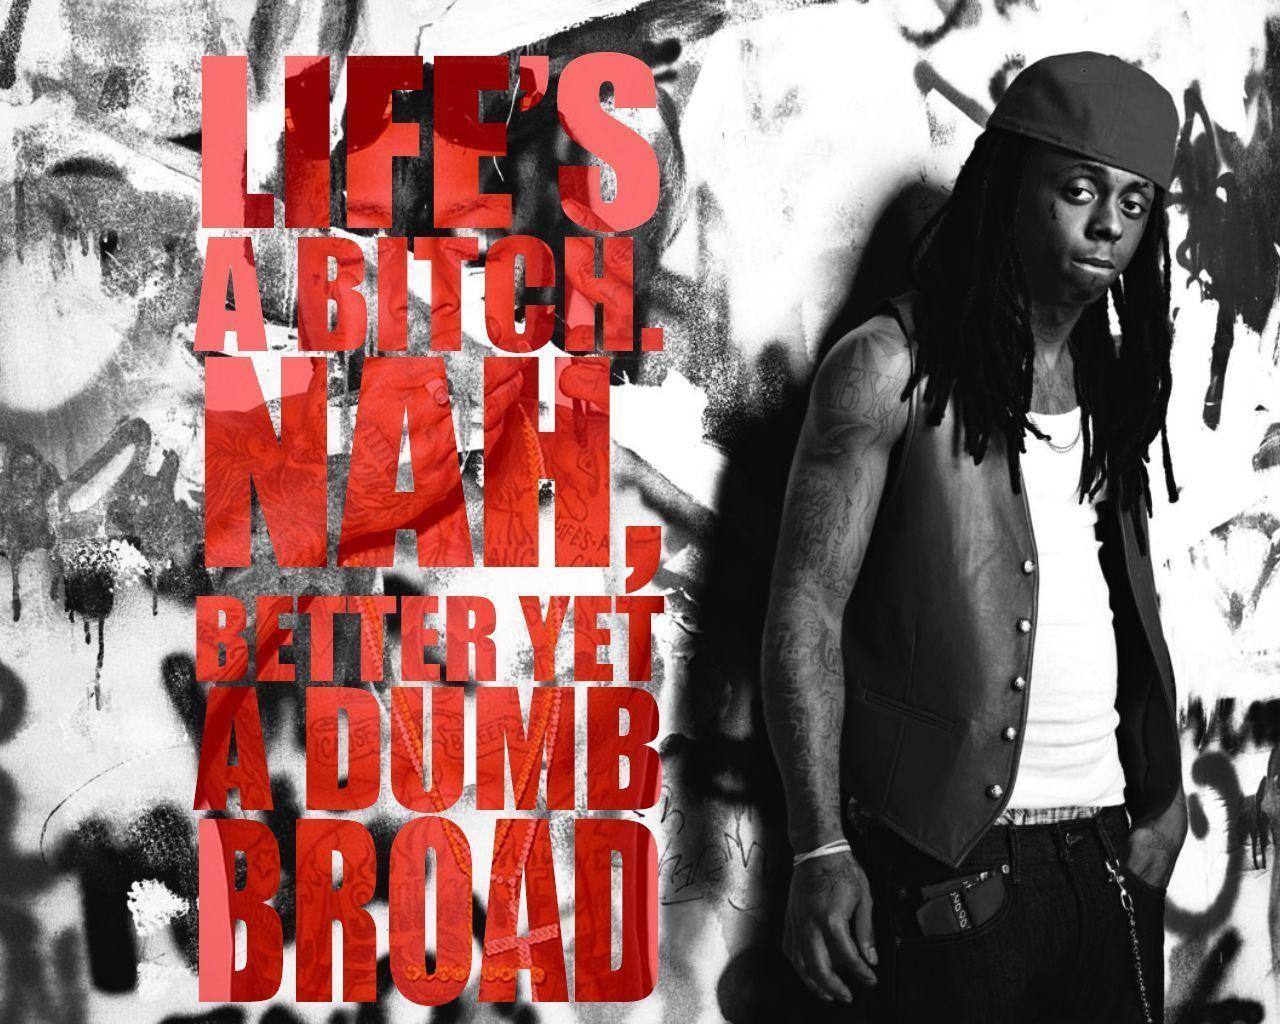 Lil Wayne Wallpaper Smoke 2015